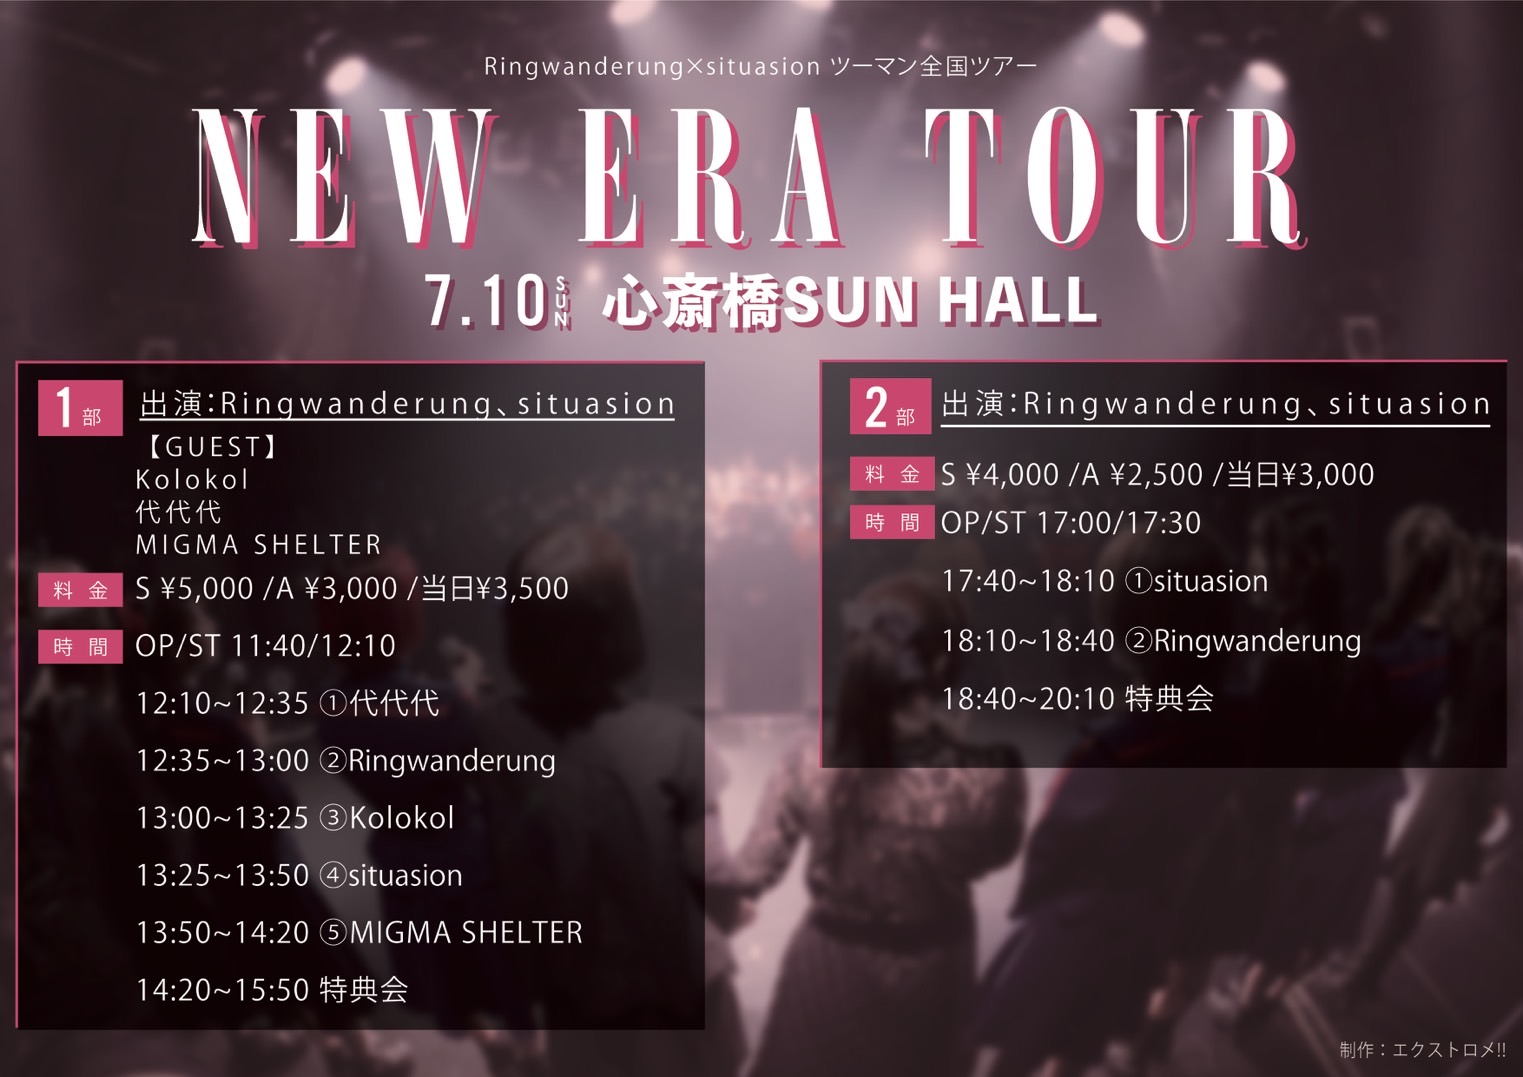 NEW ERA TOUR 1部 / 2部